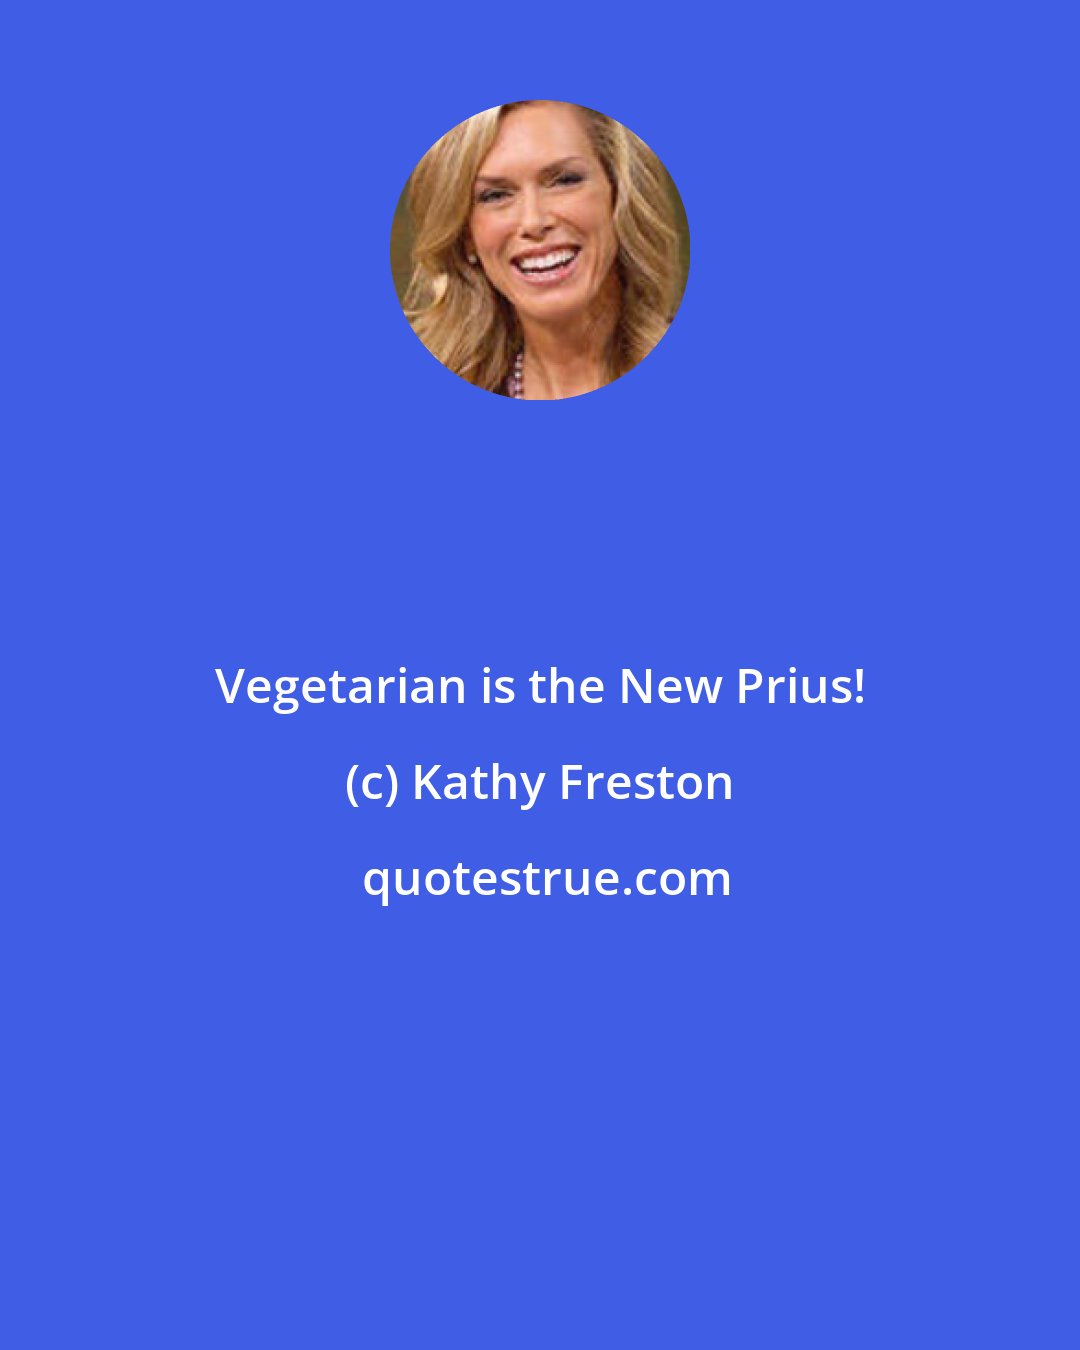 Kathy Freston: Vegetarian is the New Prius!